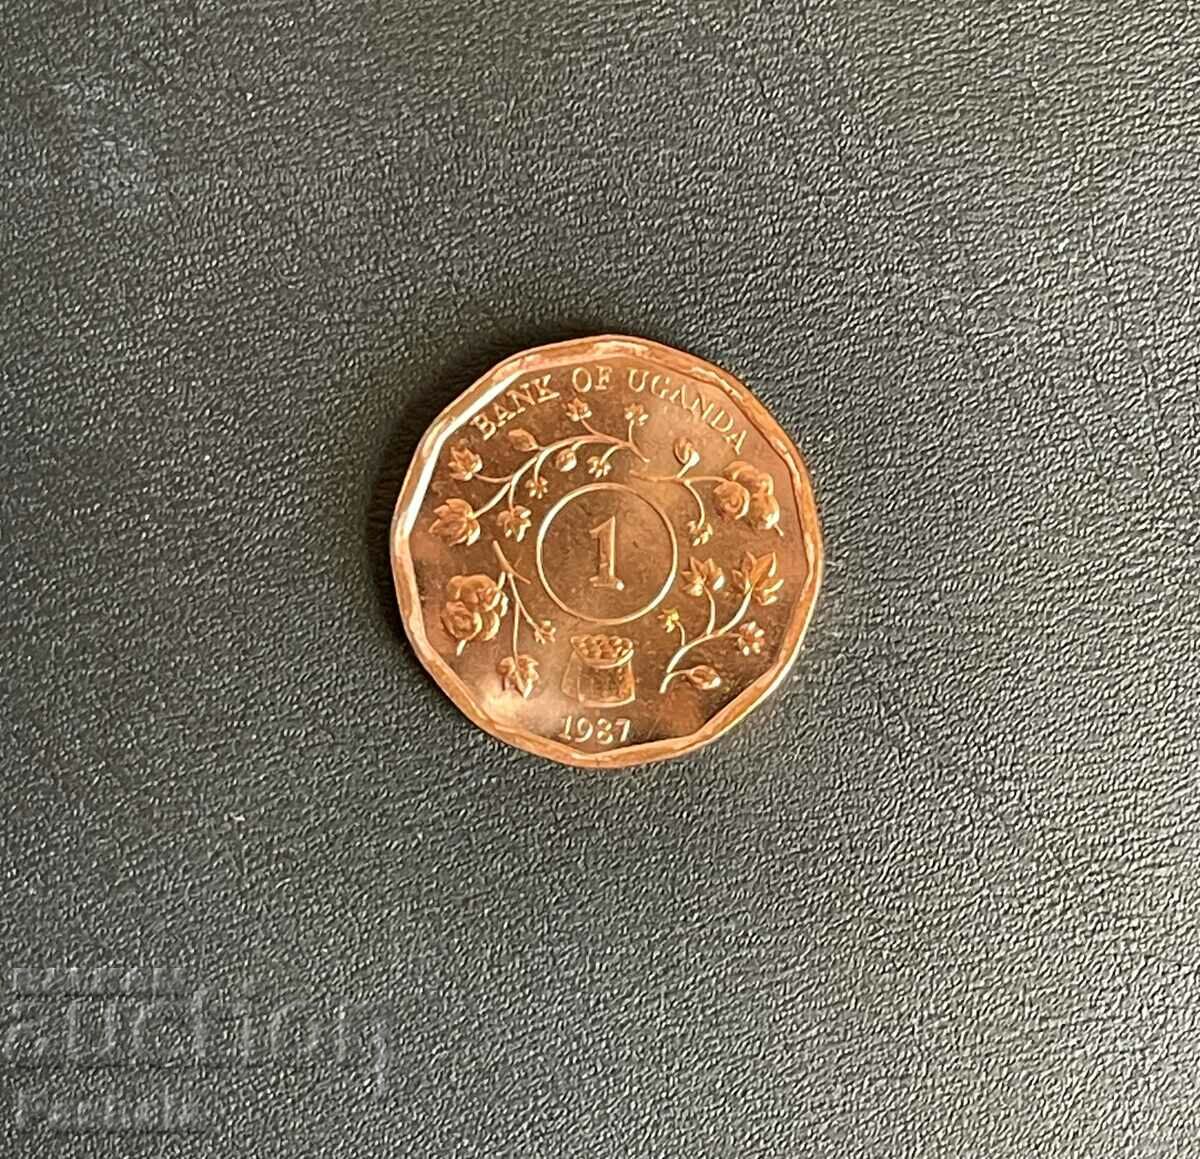 Uganda 1 Shilling 1987